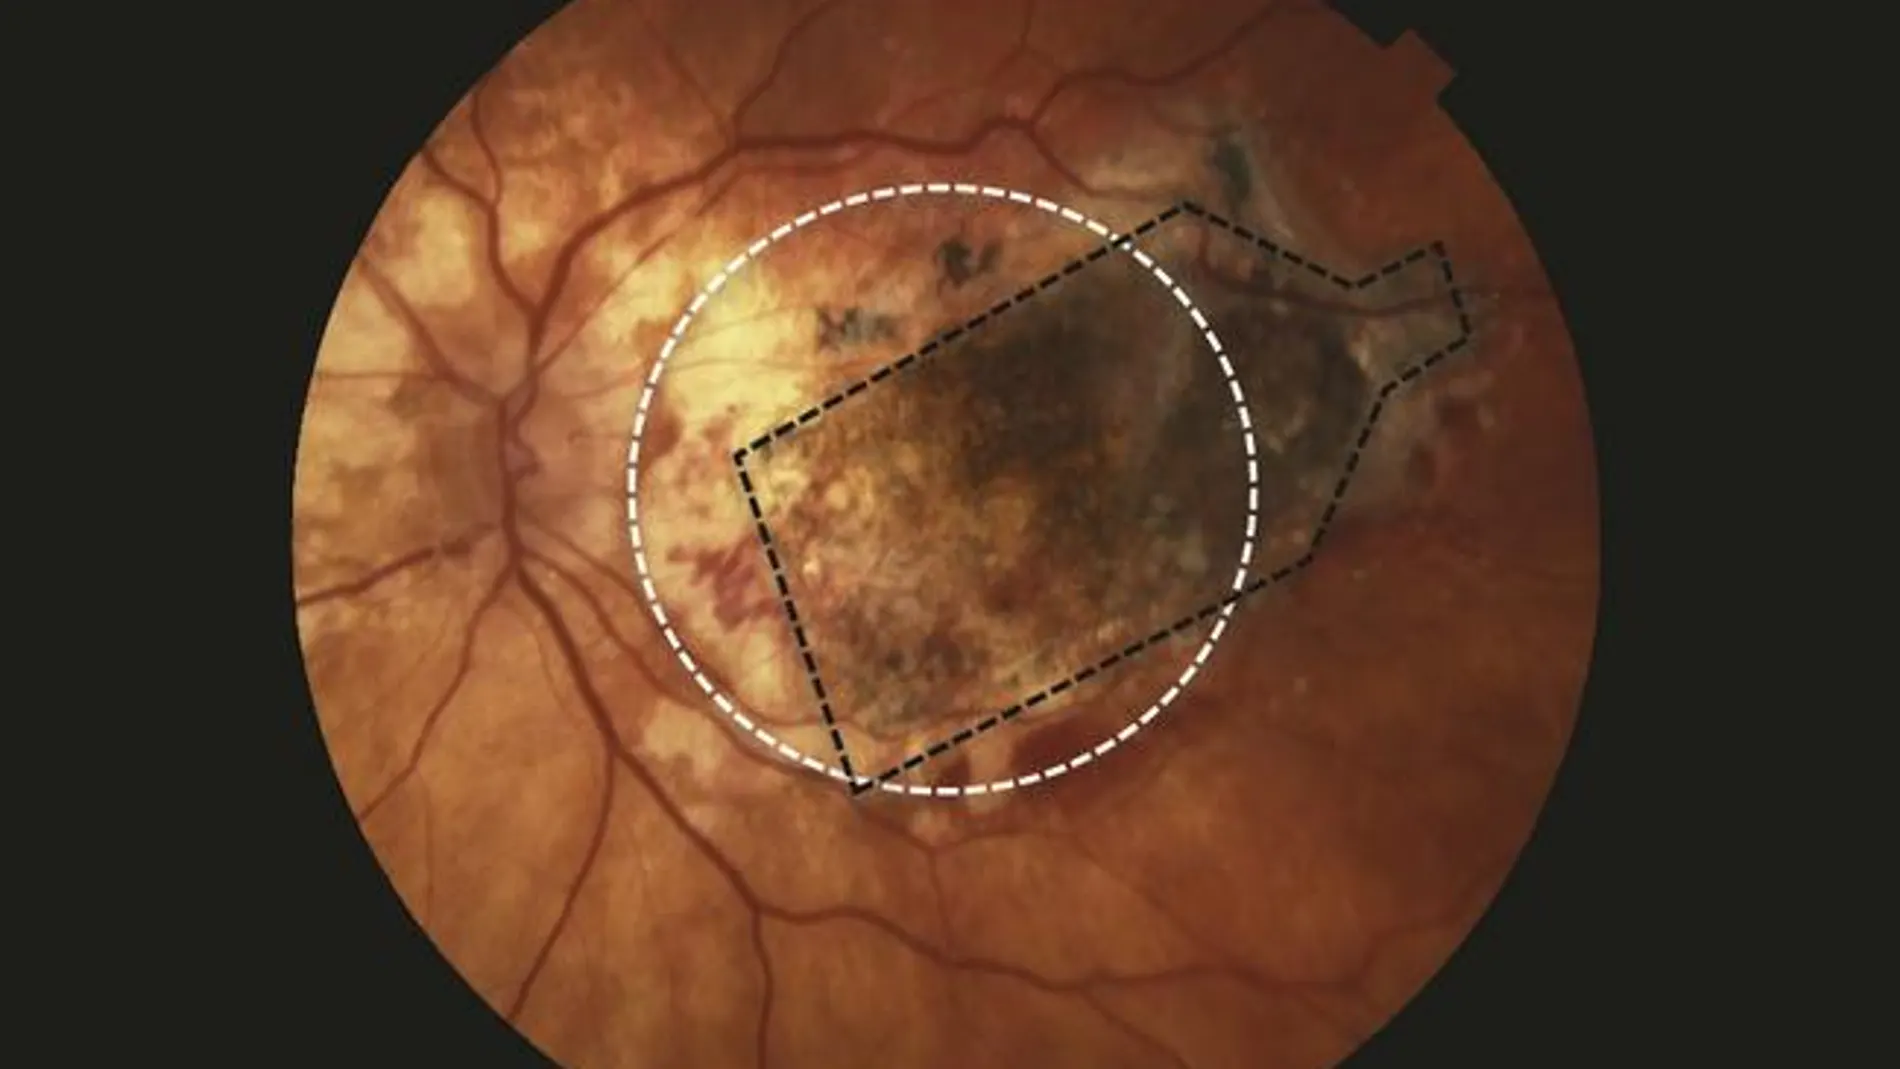 Según los autores, la células madre del implante se integraron con éxito con el tejido y la retina mostró cambios anatómicos consistentes con la reaparición del epitelio pigmentario